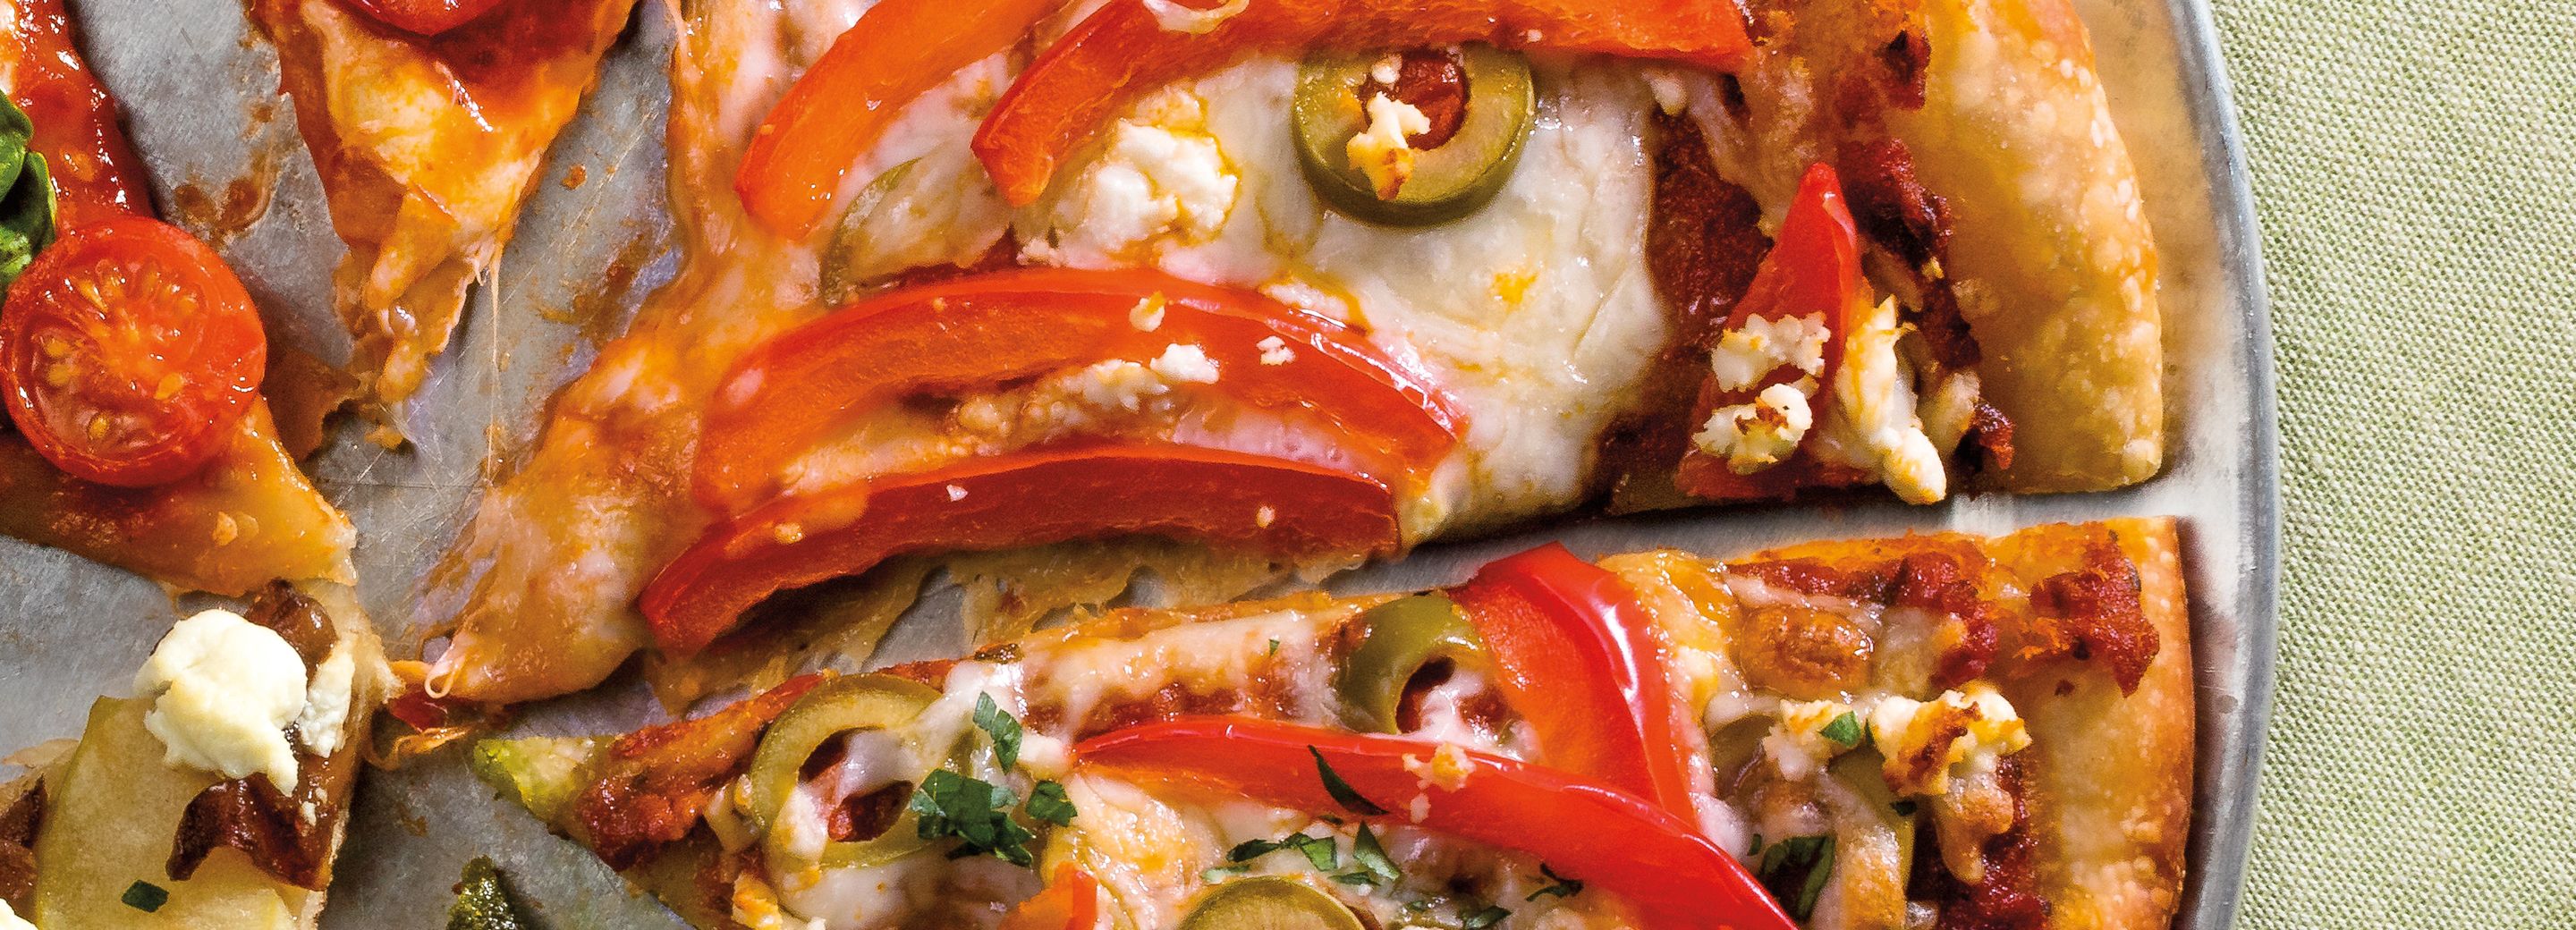 Mixed-Up Mediterranean Pizza Pie